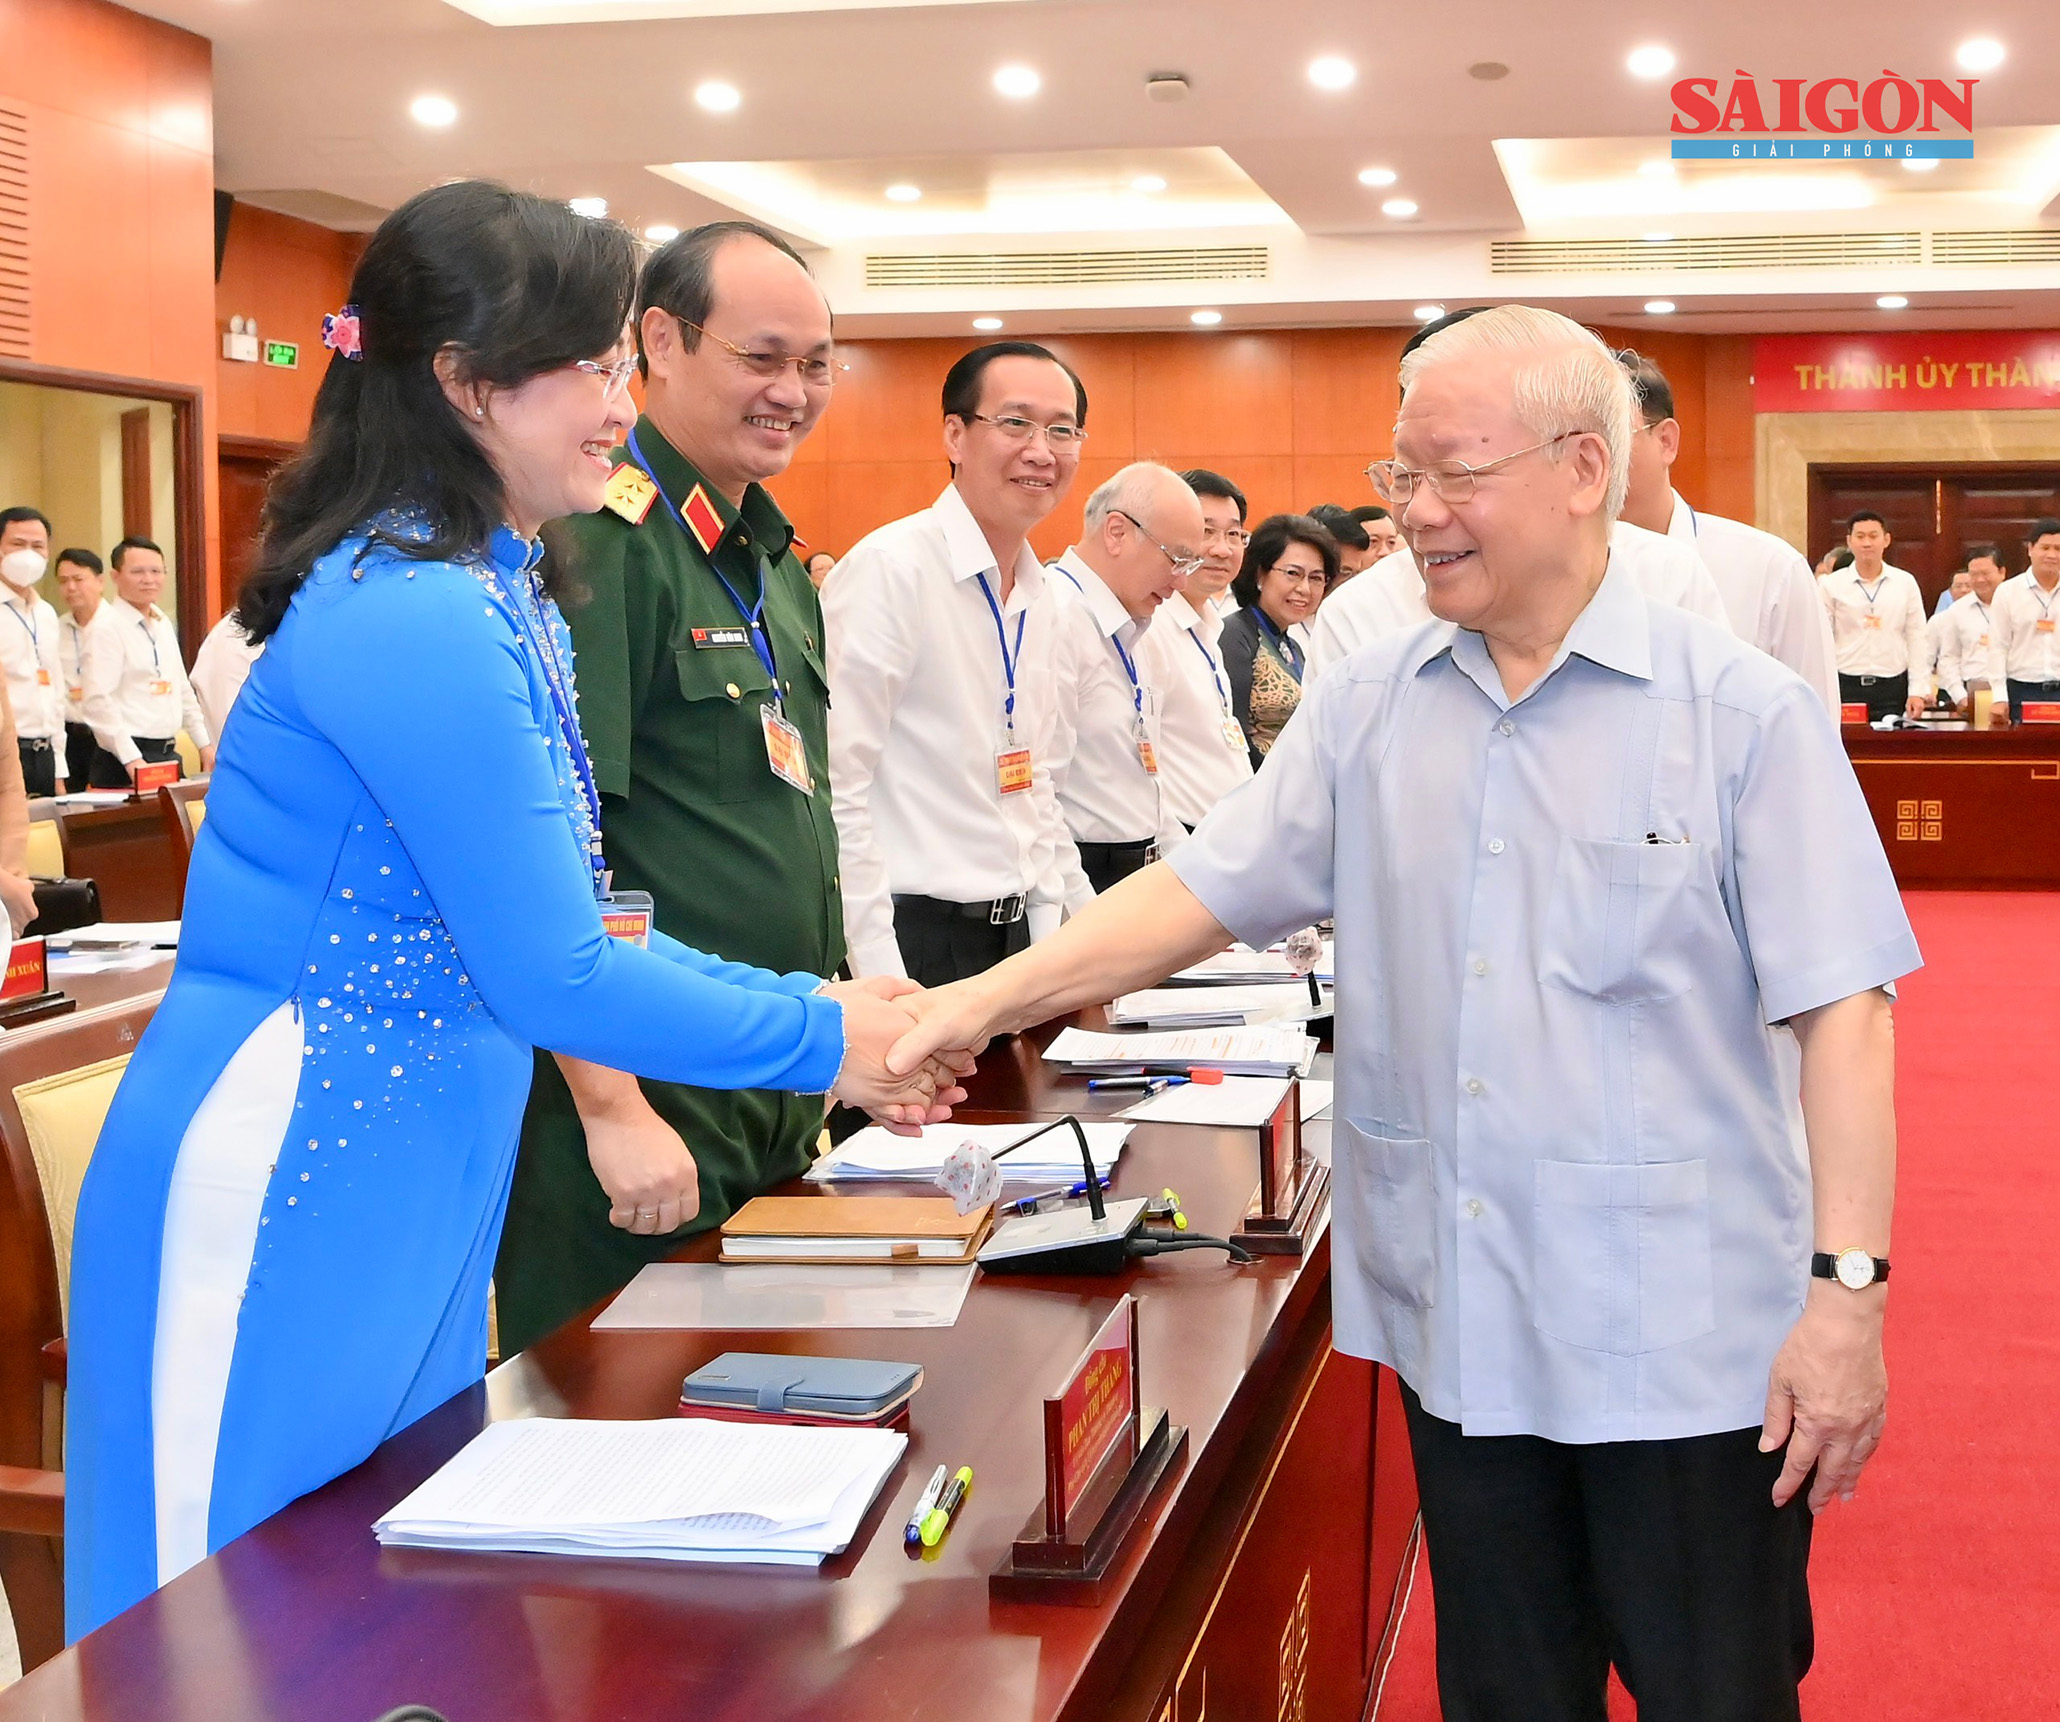 Tổng Bí thư Nguyễn Phú Trọng cùng các đại biểu tại buổi làm việc (Ảnh: Việt Dũng)